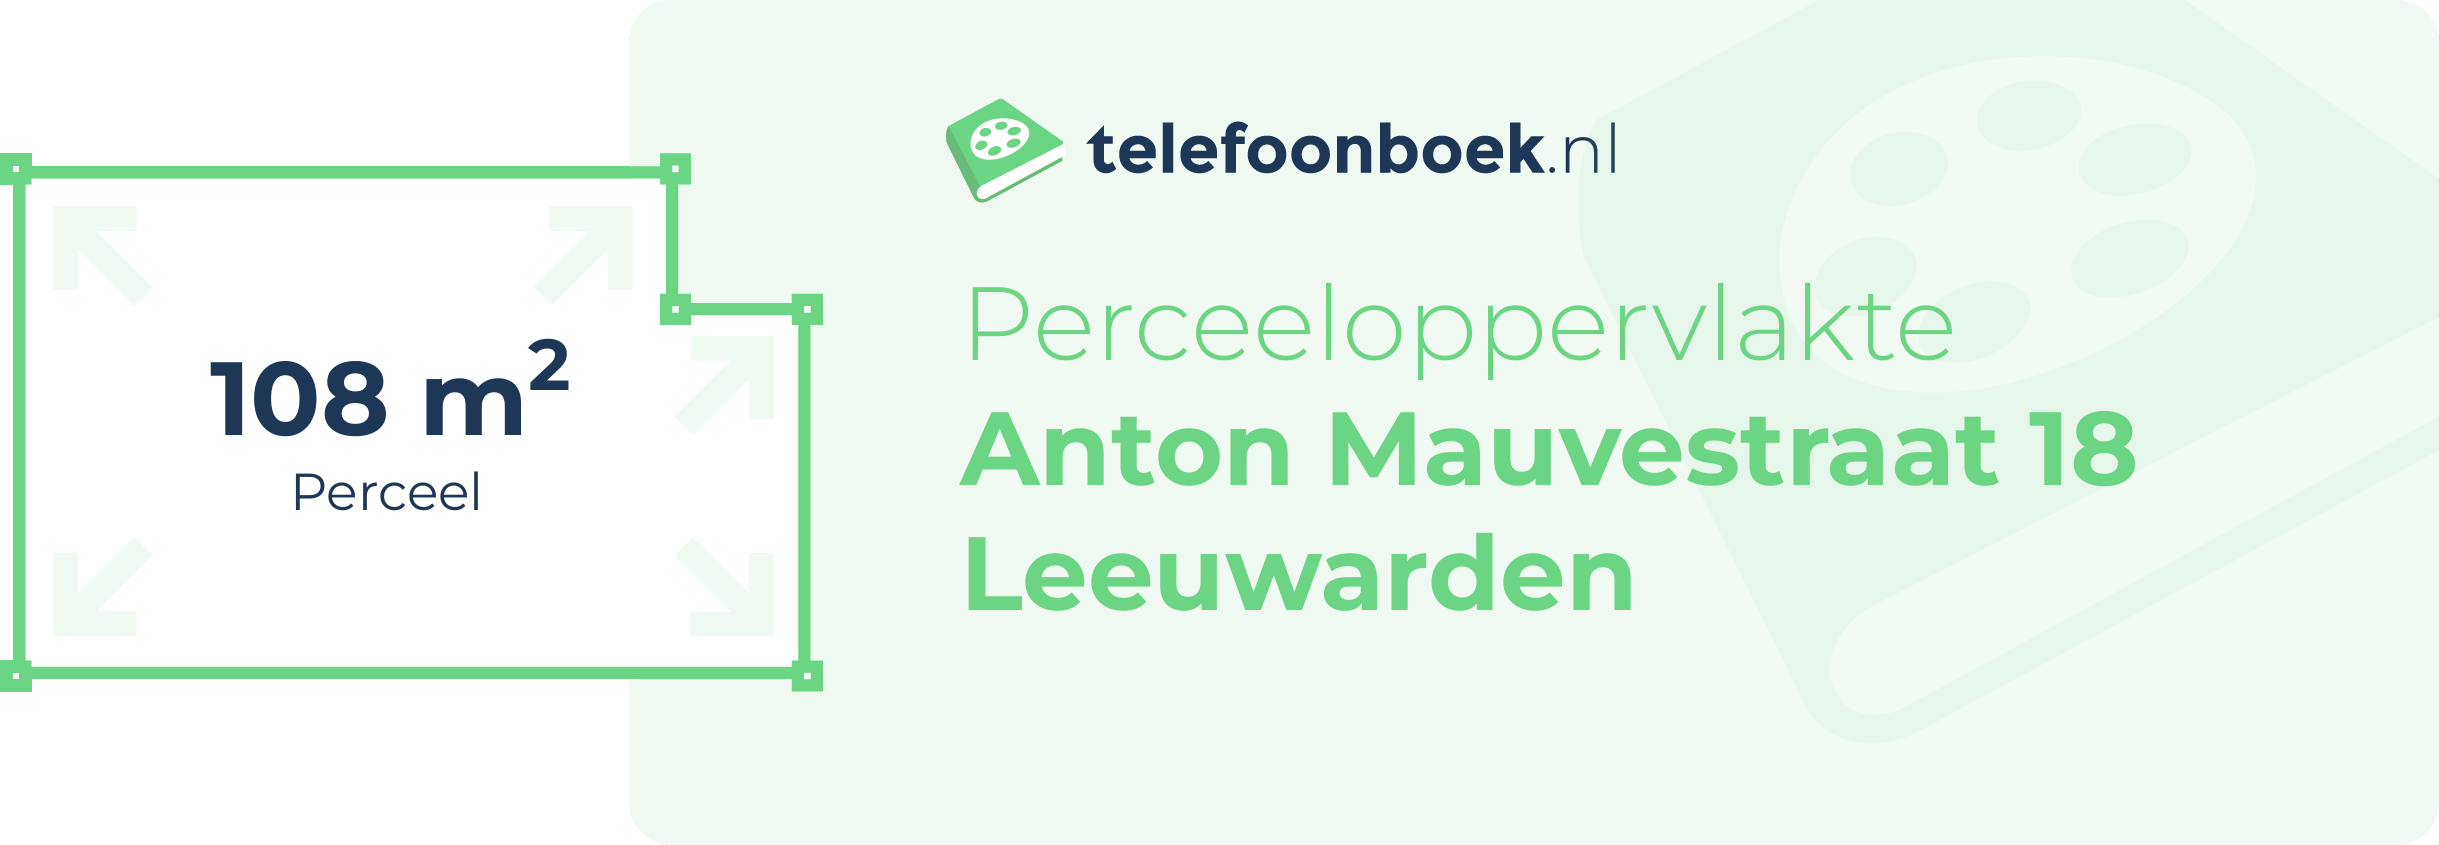 Perceeloppervlakte Anton Mauvestraat 18 Leeuwarden